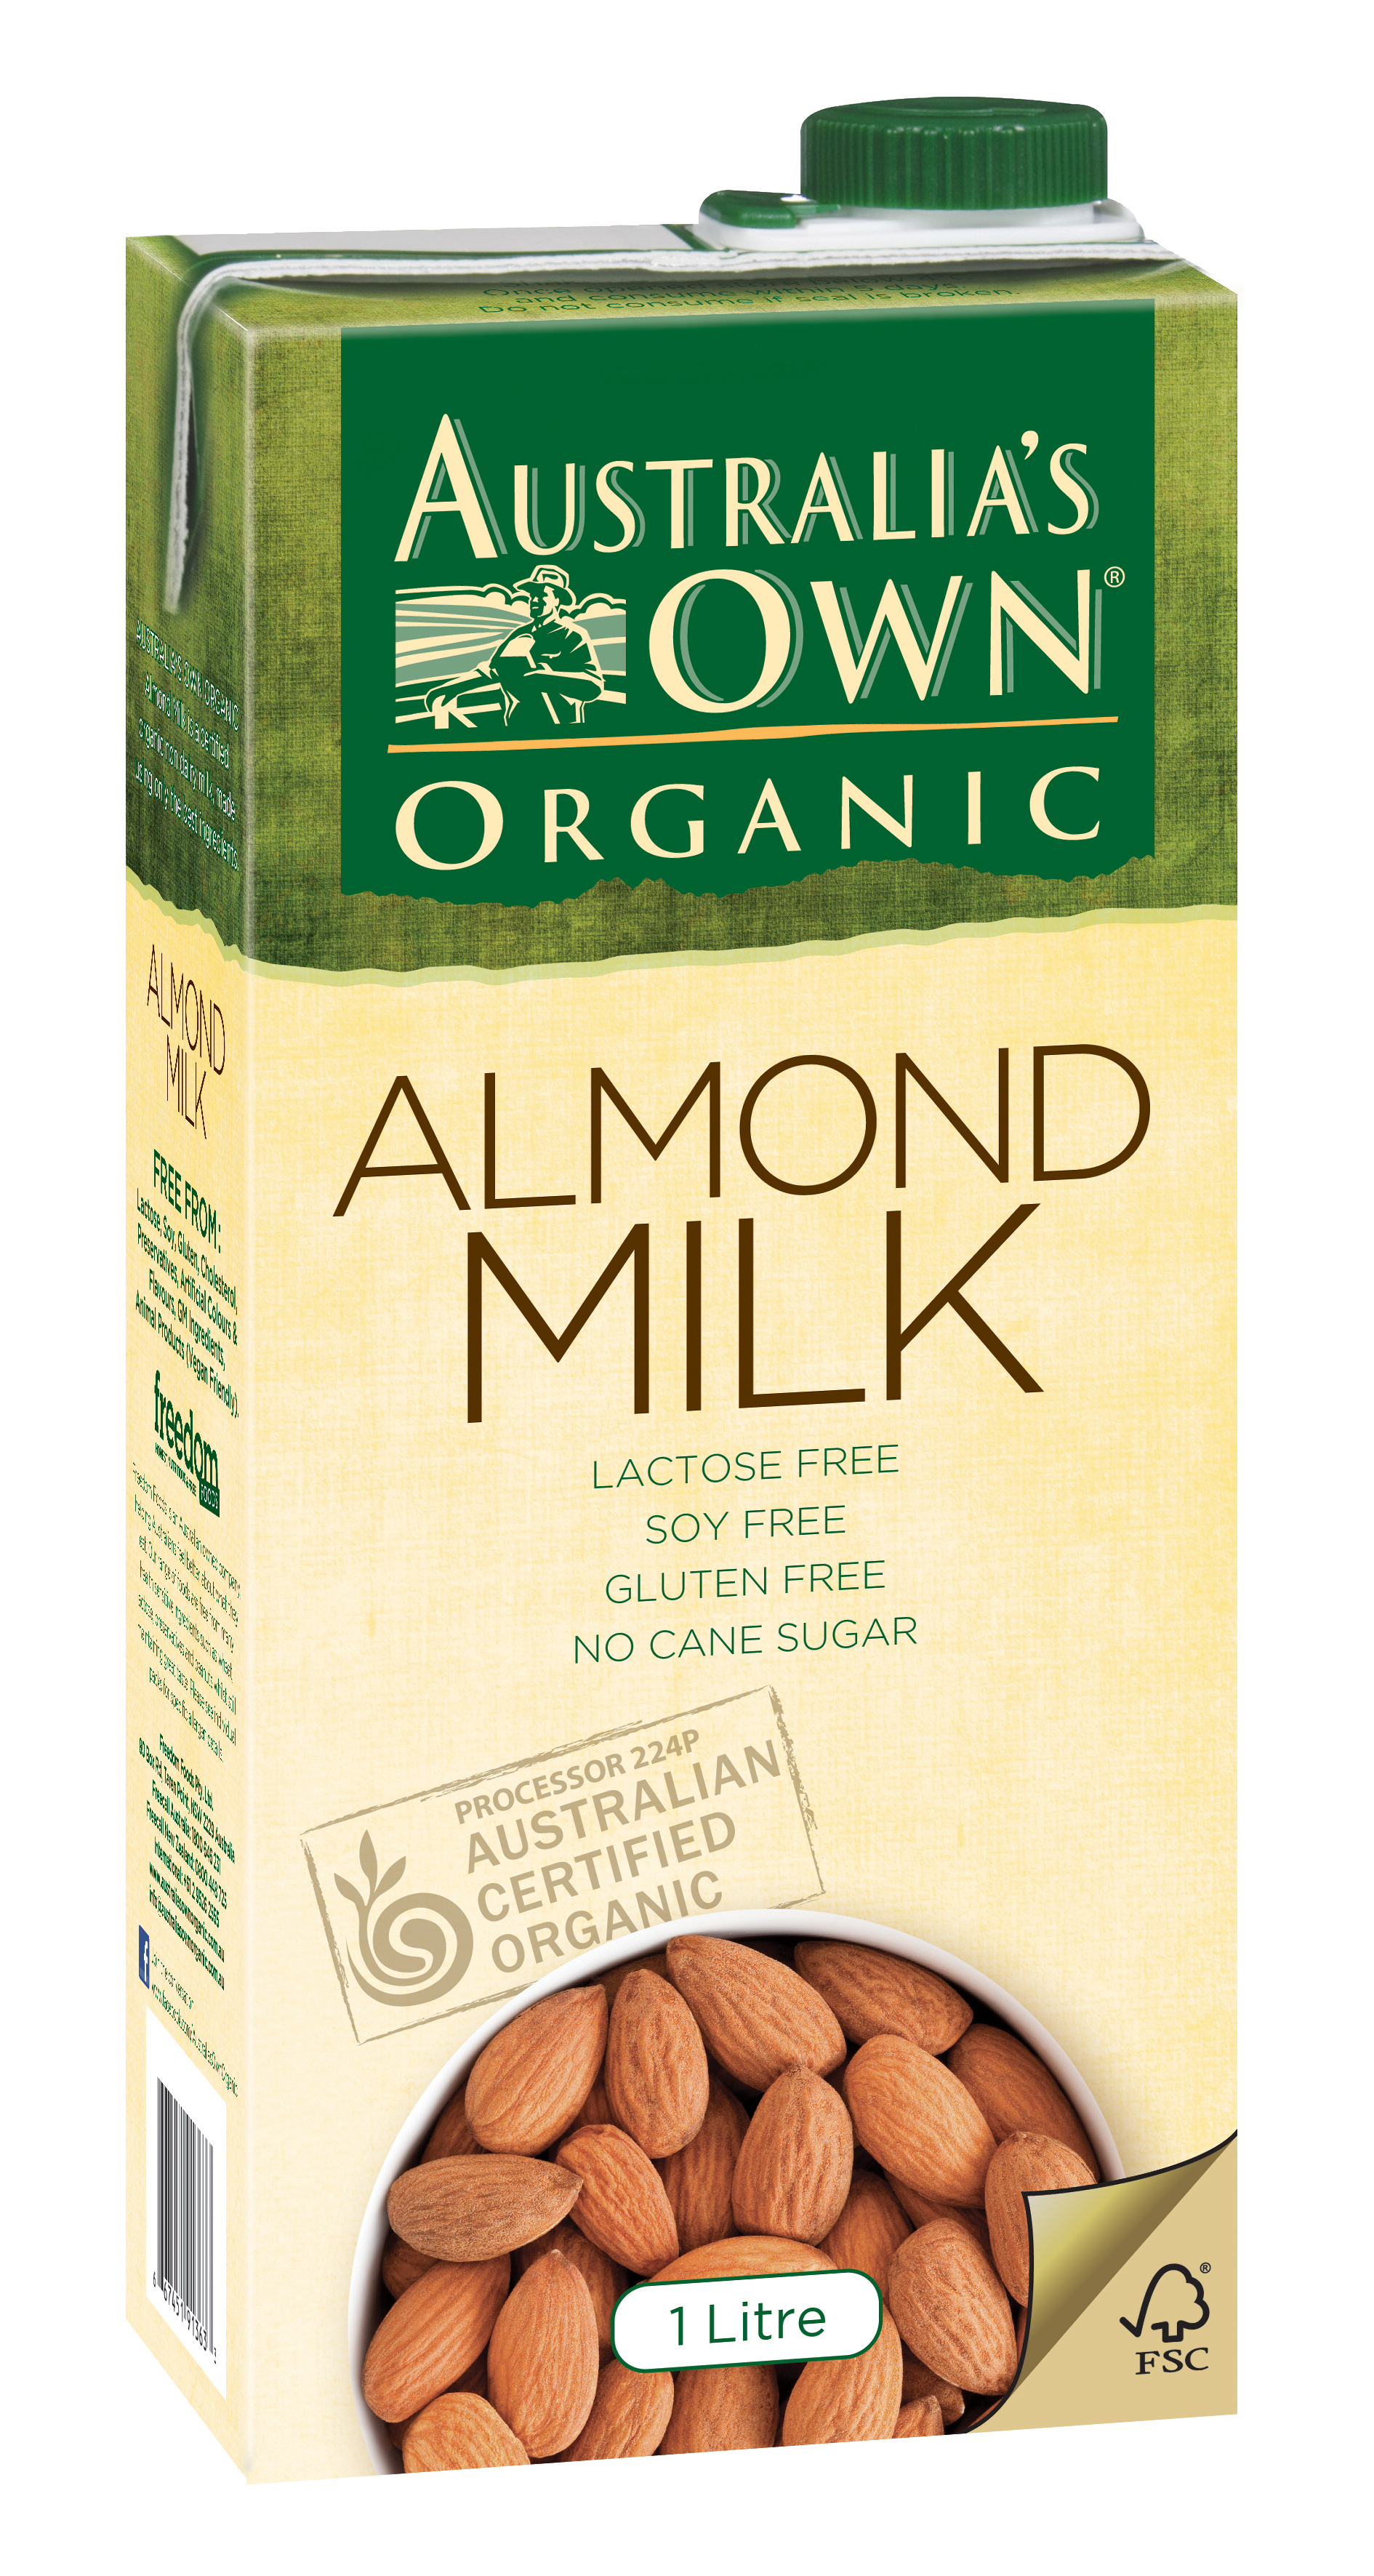 Australias Own Organic Almond Milk Au